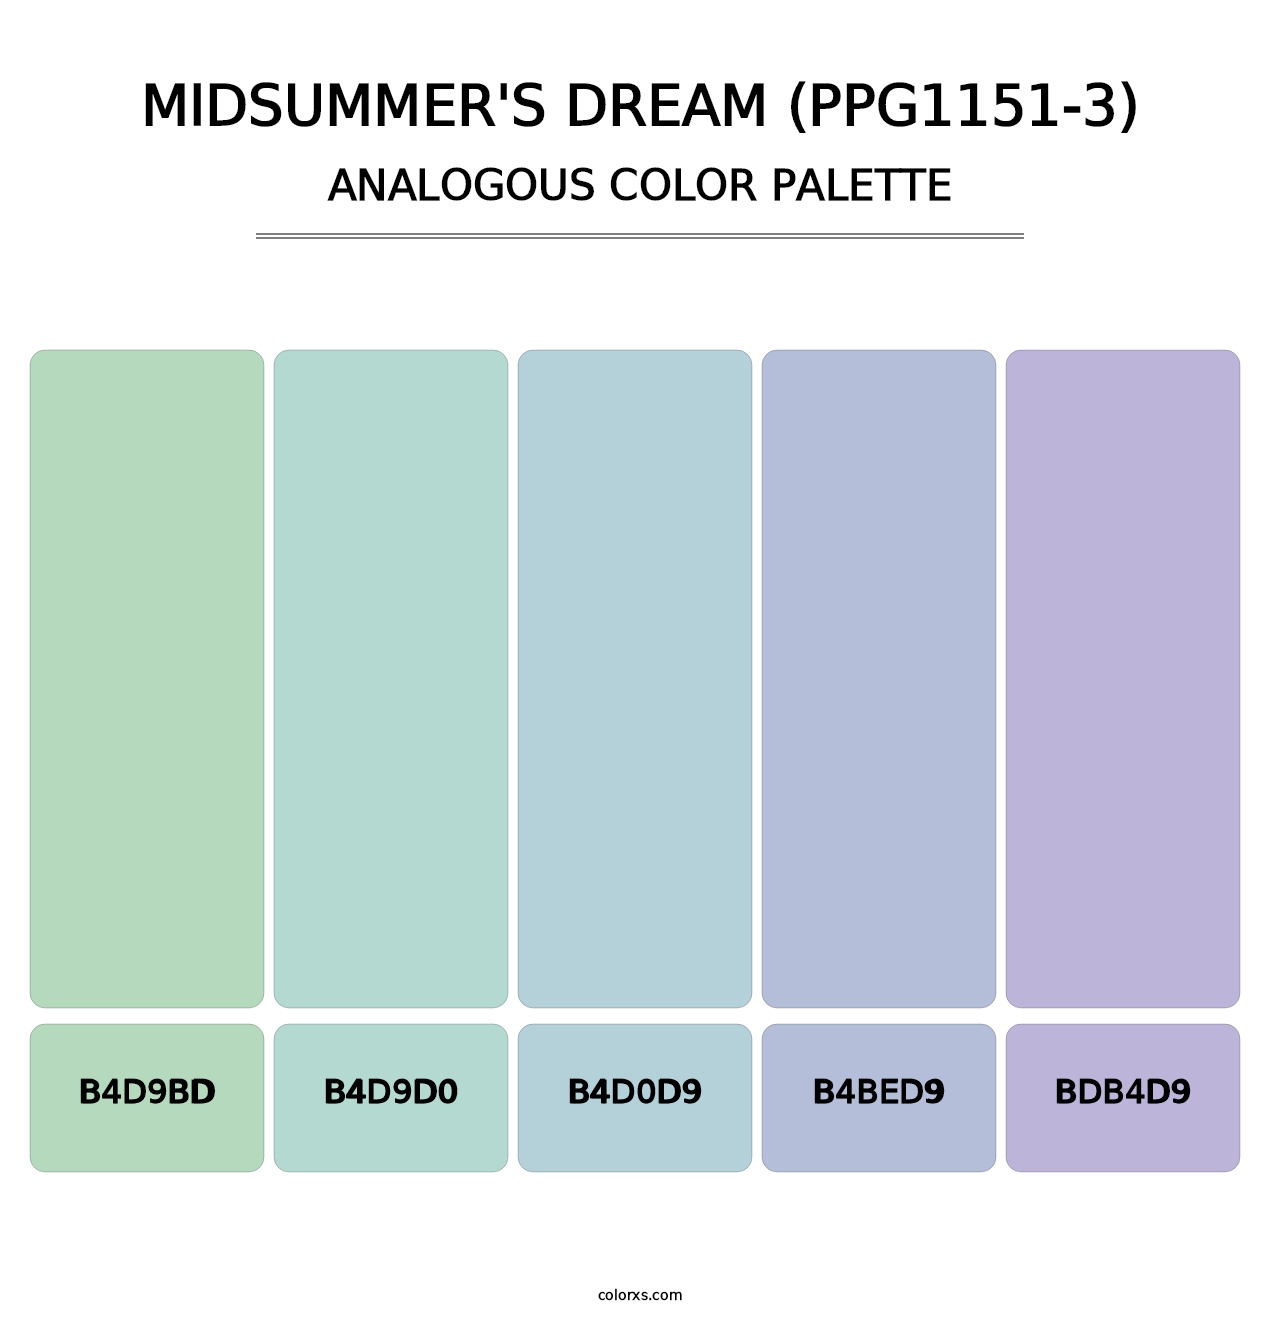 Midsummer's Dream (PPG1151-3) - Analogous Color Palette